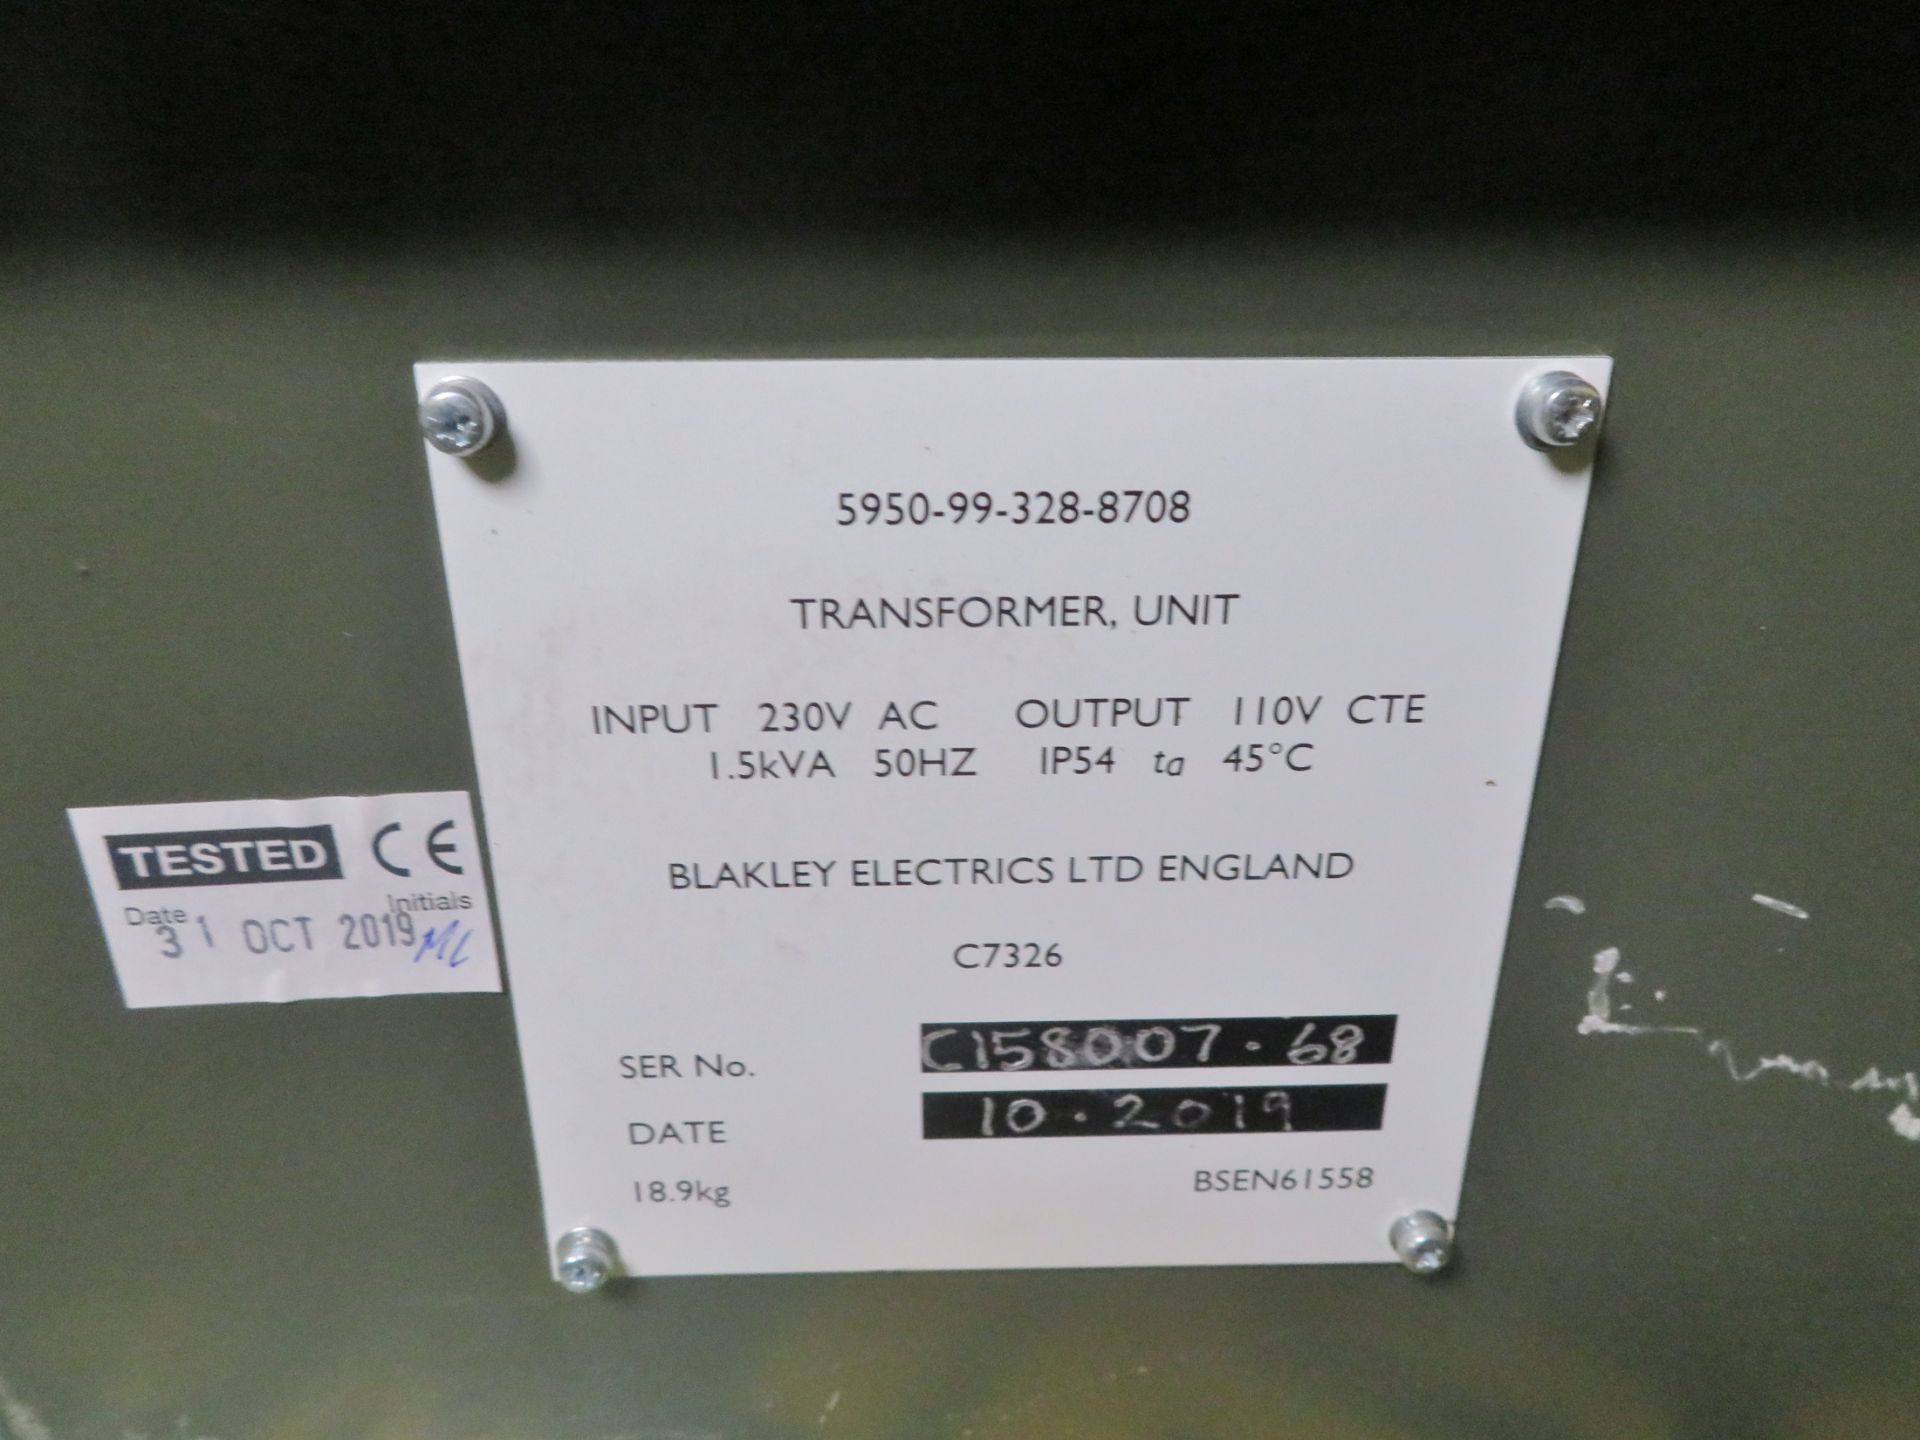 2x Blakley C7326 Transformer Units Input 230v Output 110v - Image 5 of 6